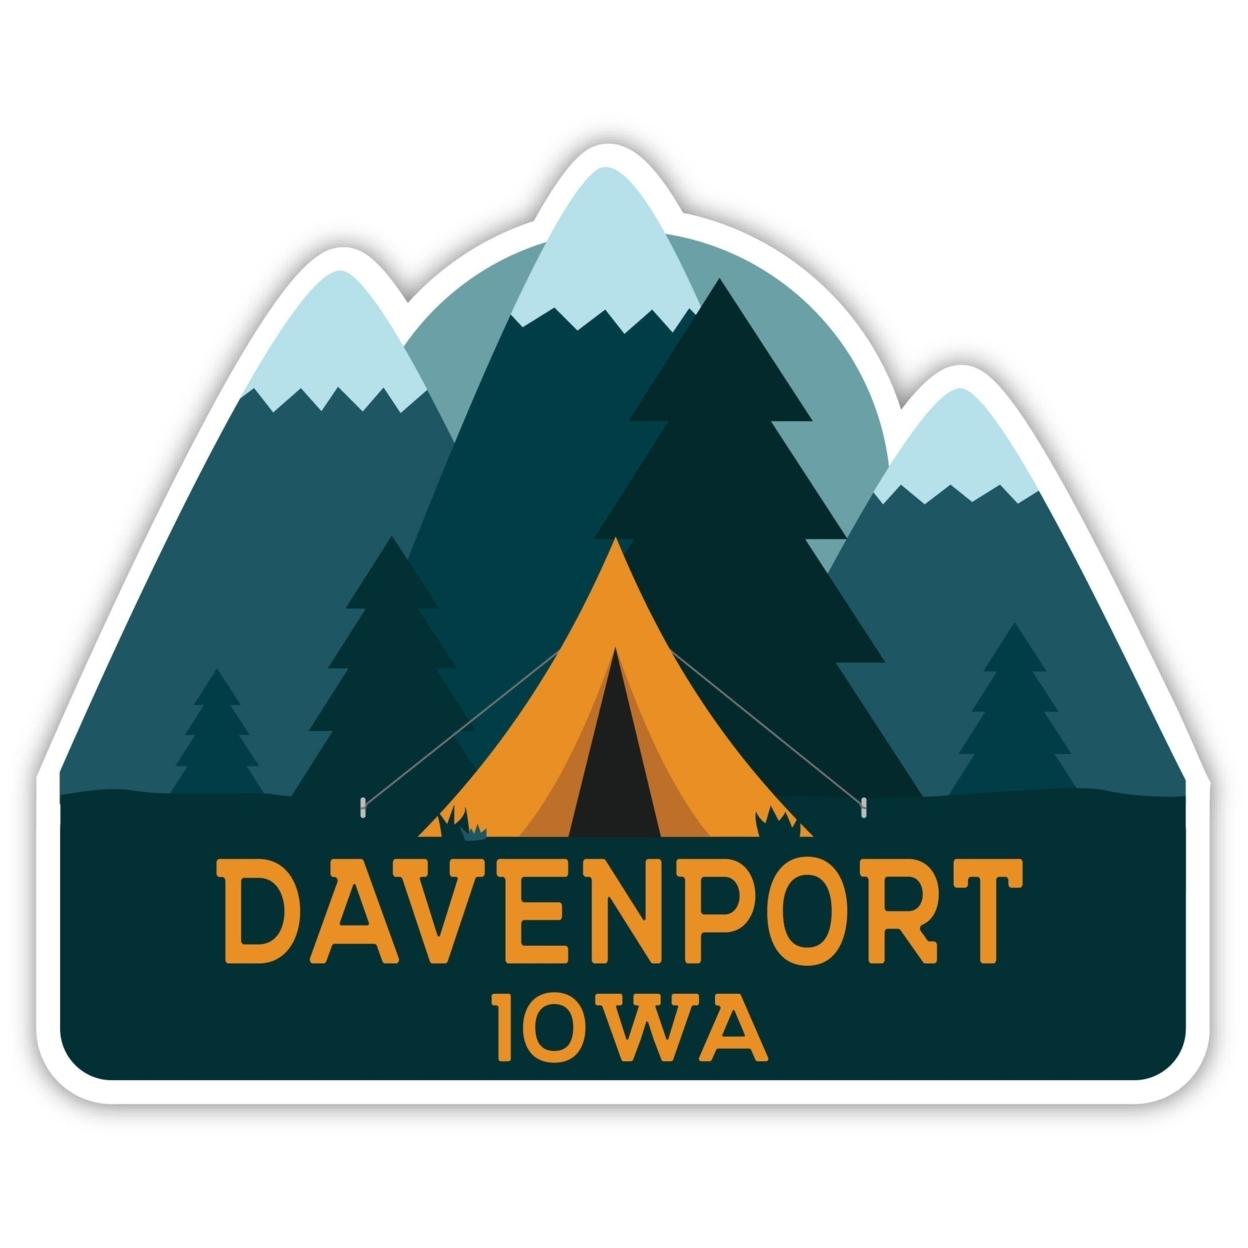 Davenport Iowa Souvenir Decorative Stickers (Choose Theme And Size) - Single Unit, 4-Inch, Tent